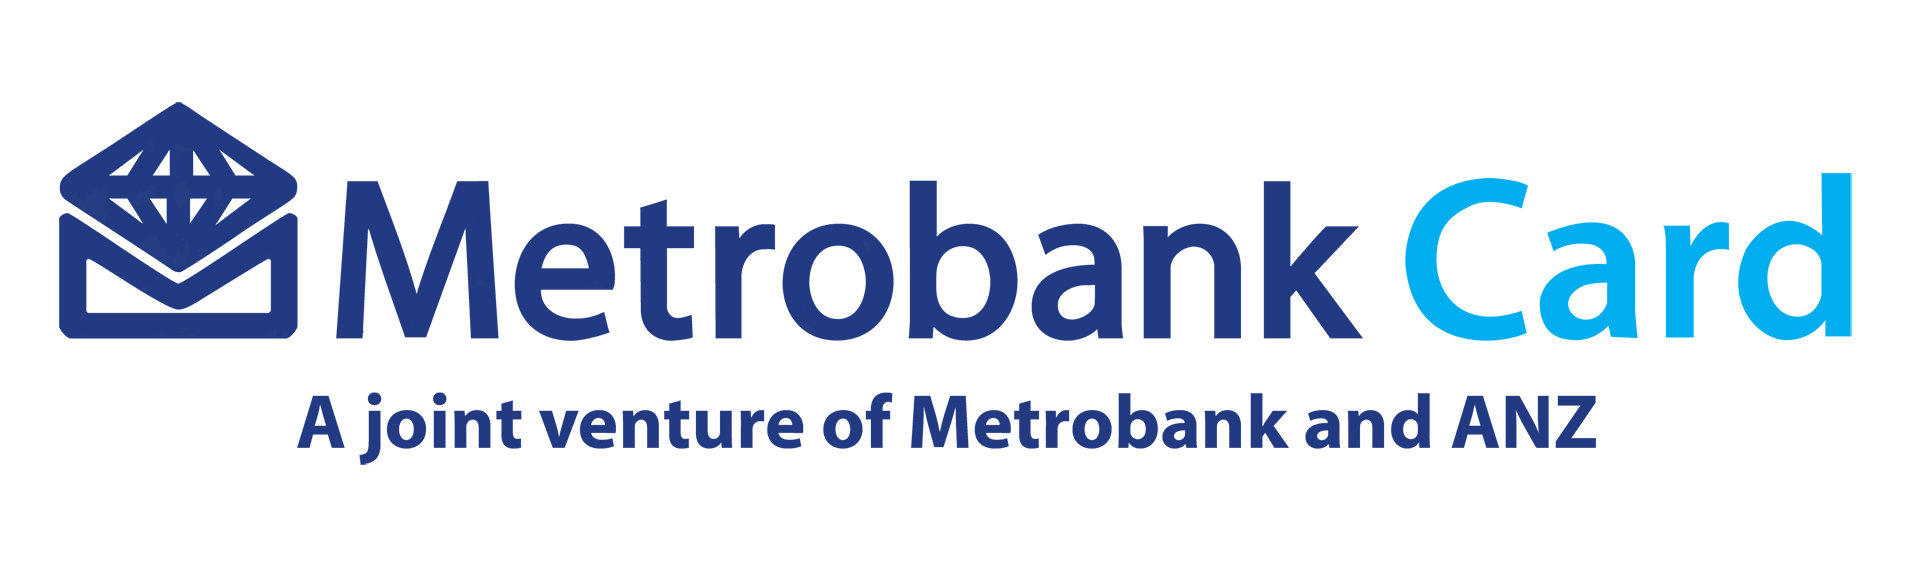 Metrobank Logo - Metrobank logo png 6 PNG Image